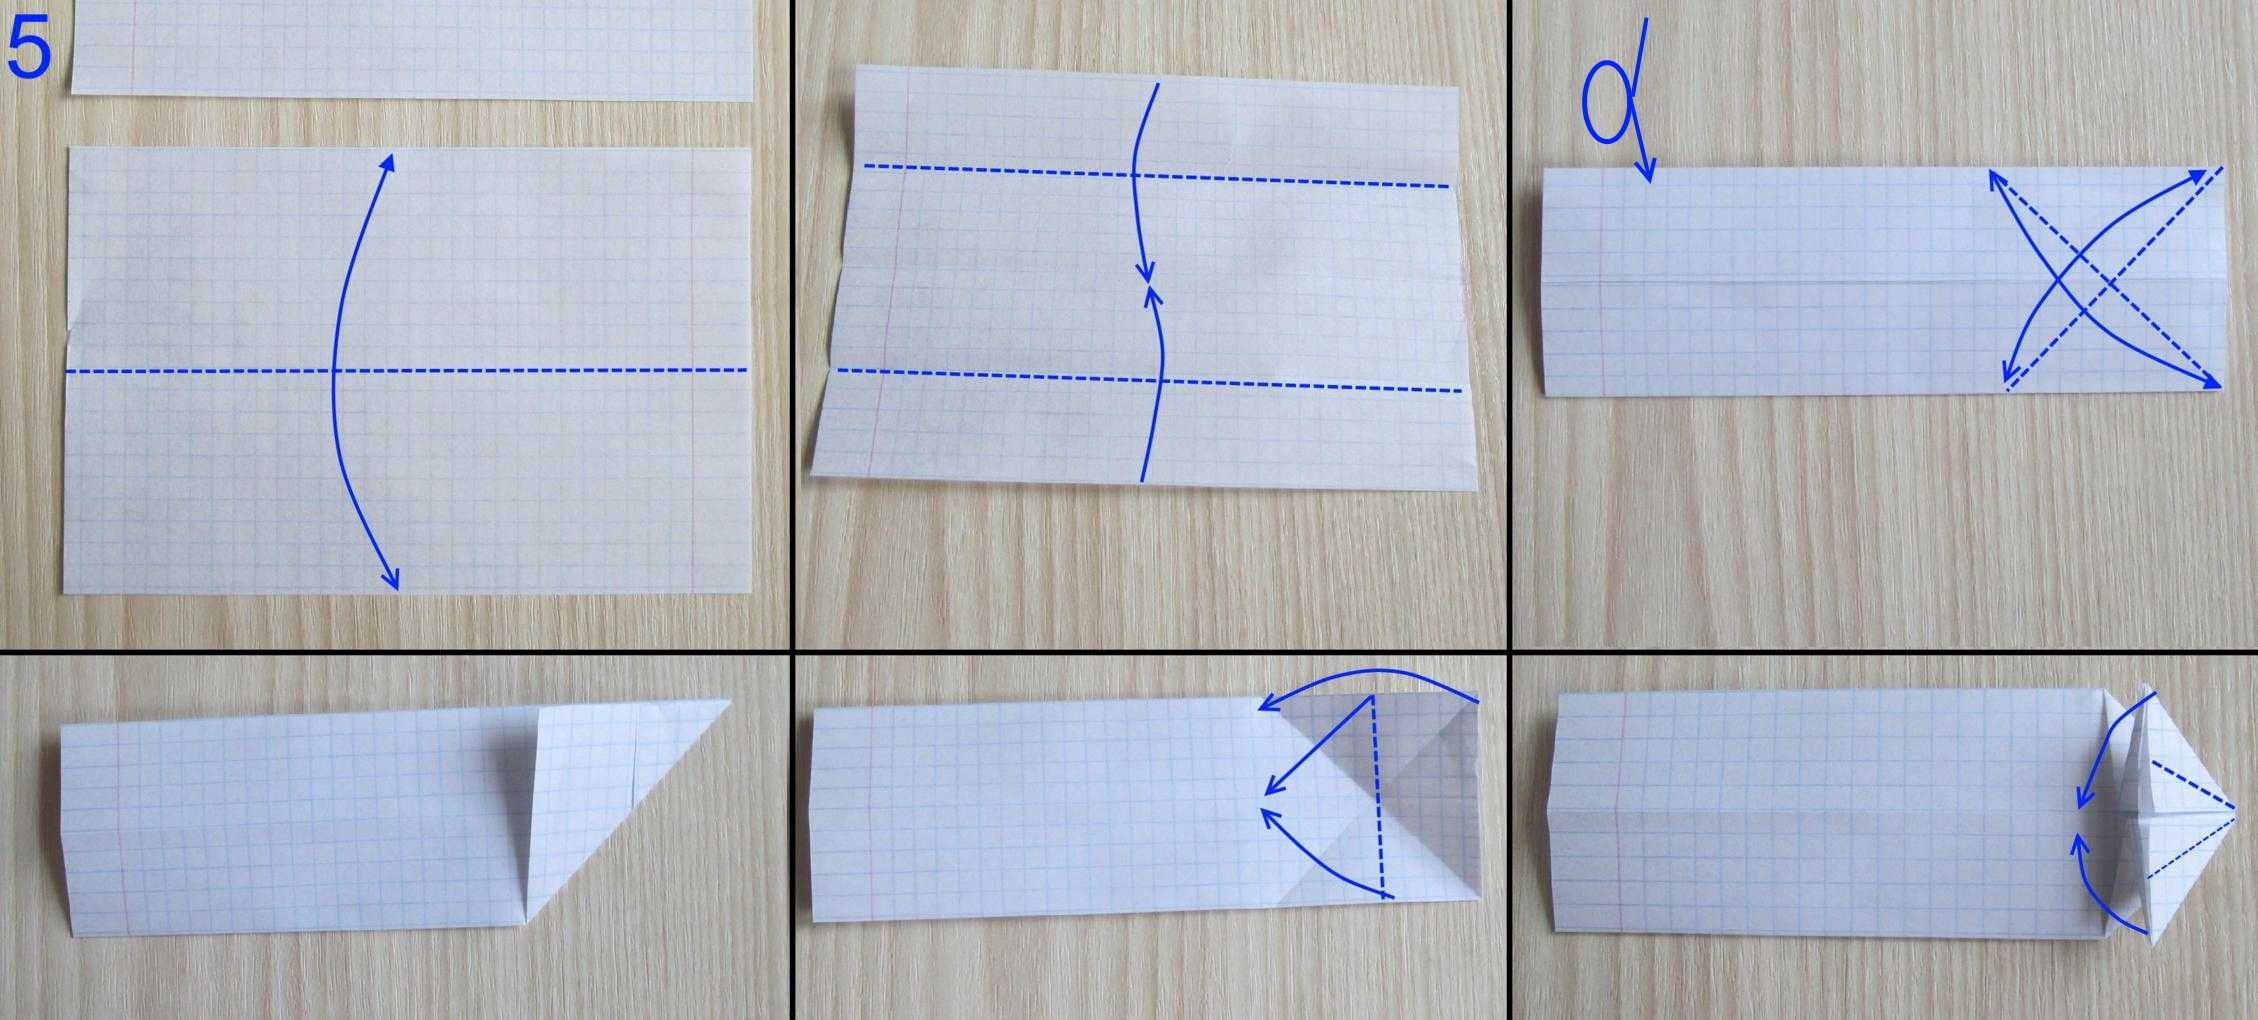 Танк из бумаги оригами своими руками - простая инструкция с фото и видео + чертежи и схема